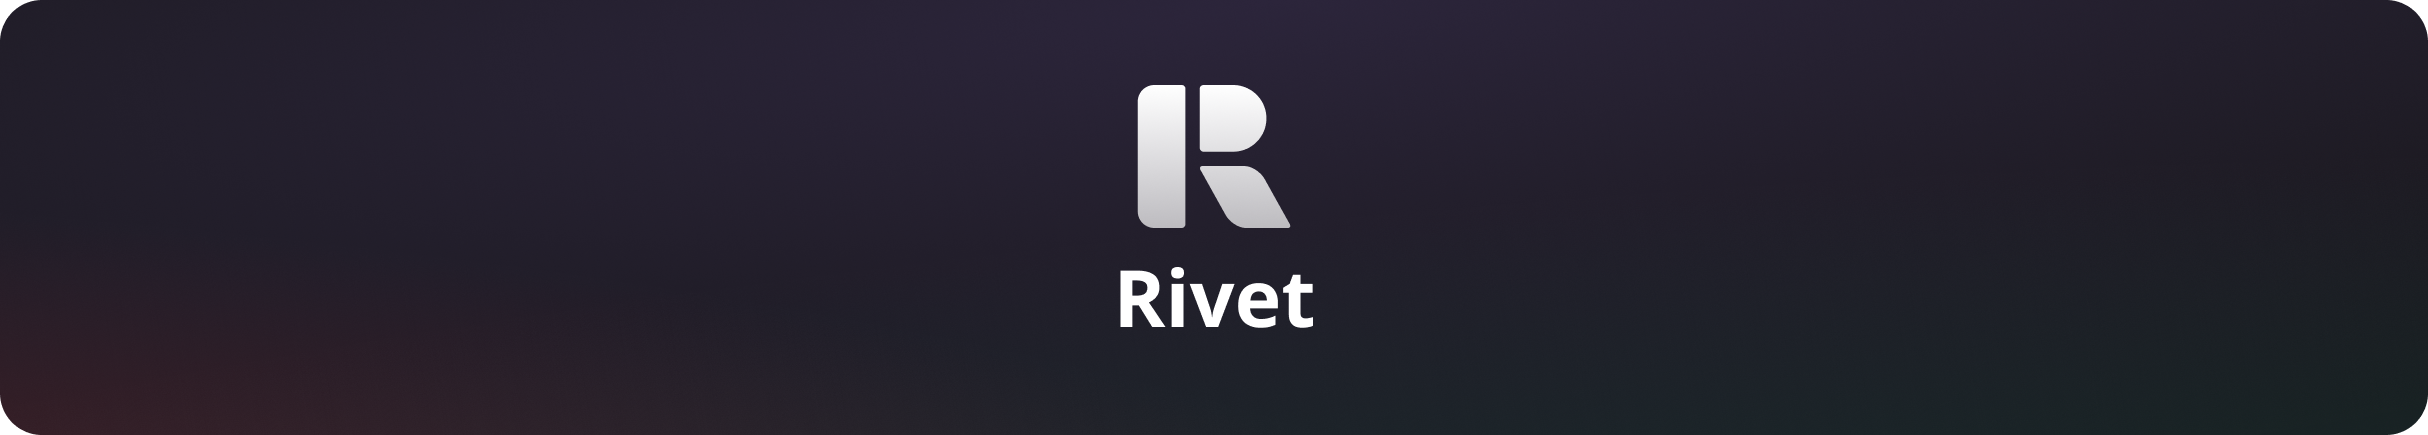 rivet_logo